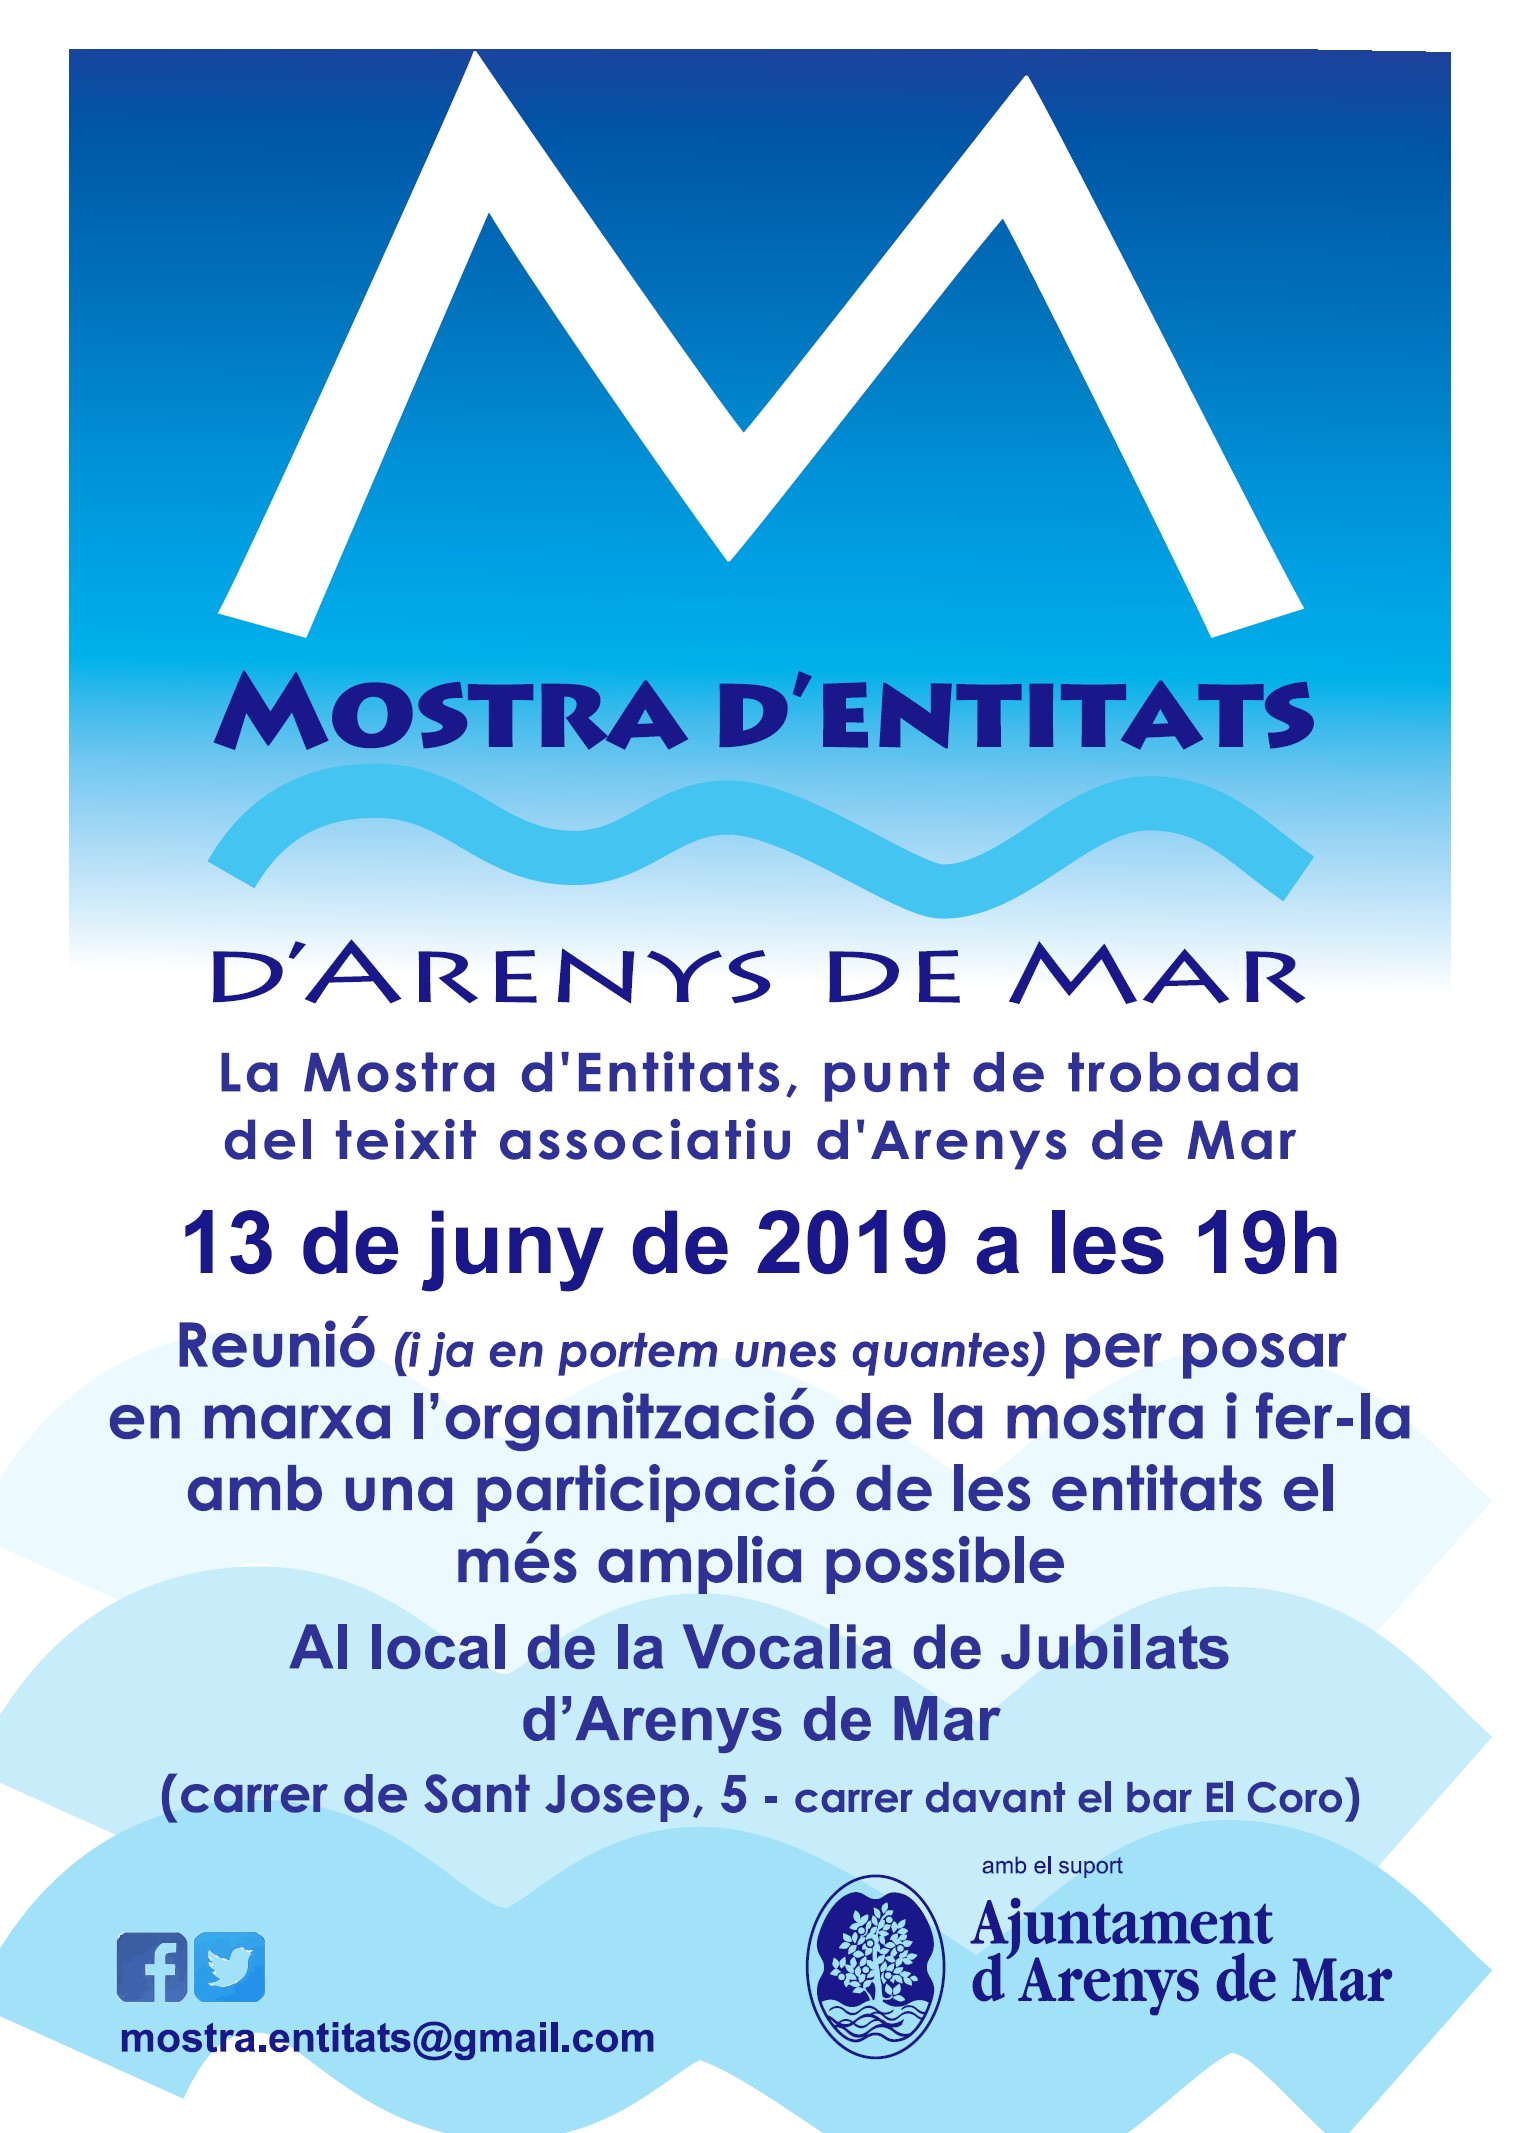 Local de la Vocalia de Jubilats d'Arenys de Mar. (carrer de Sant Josep, 5)